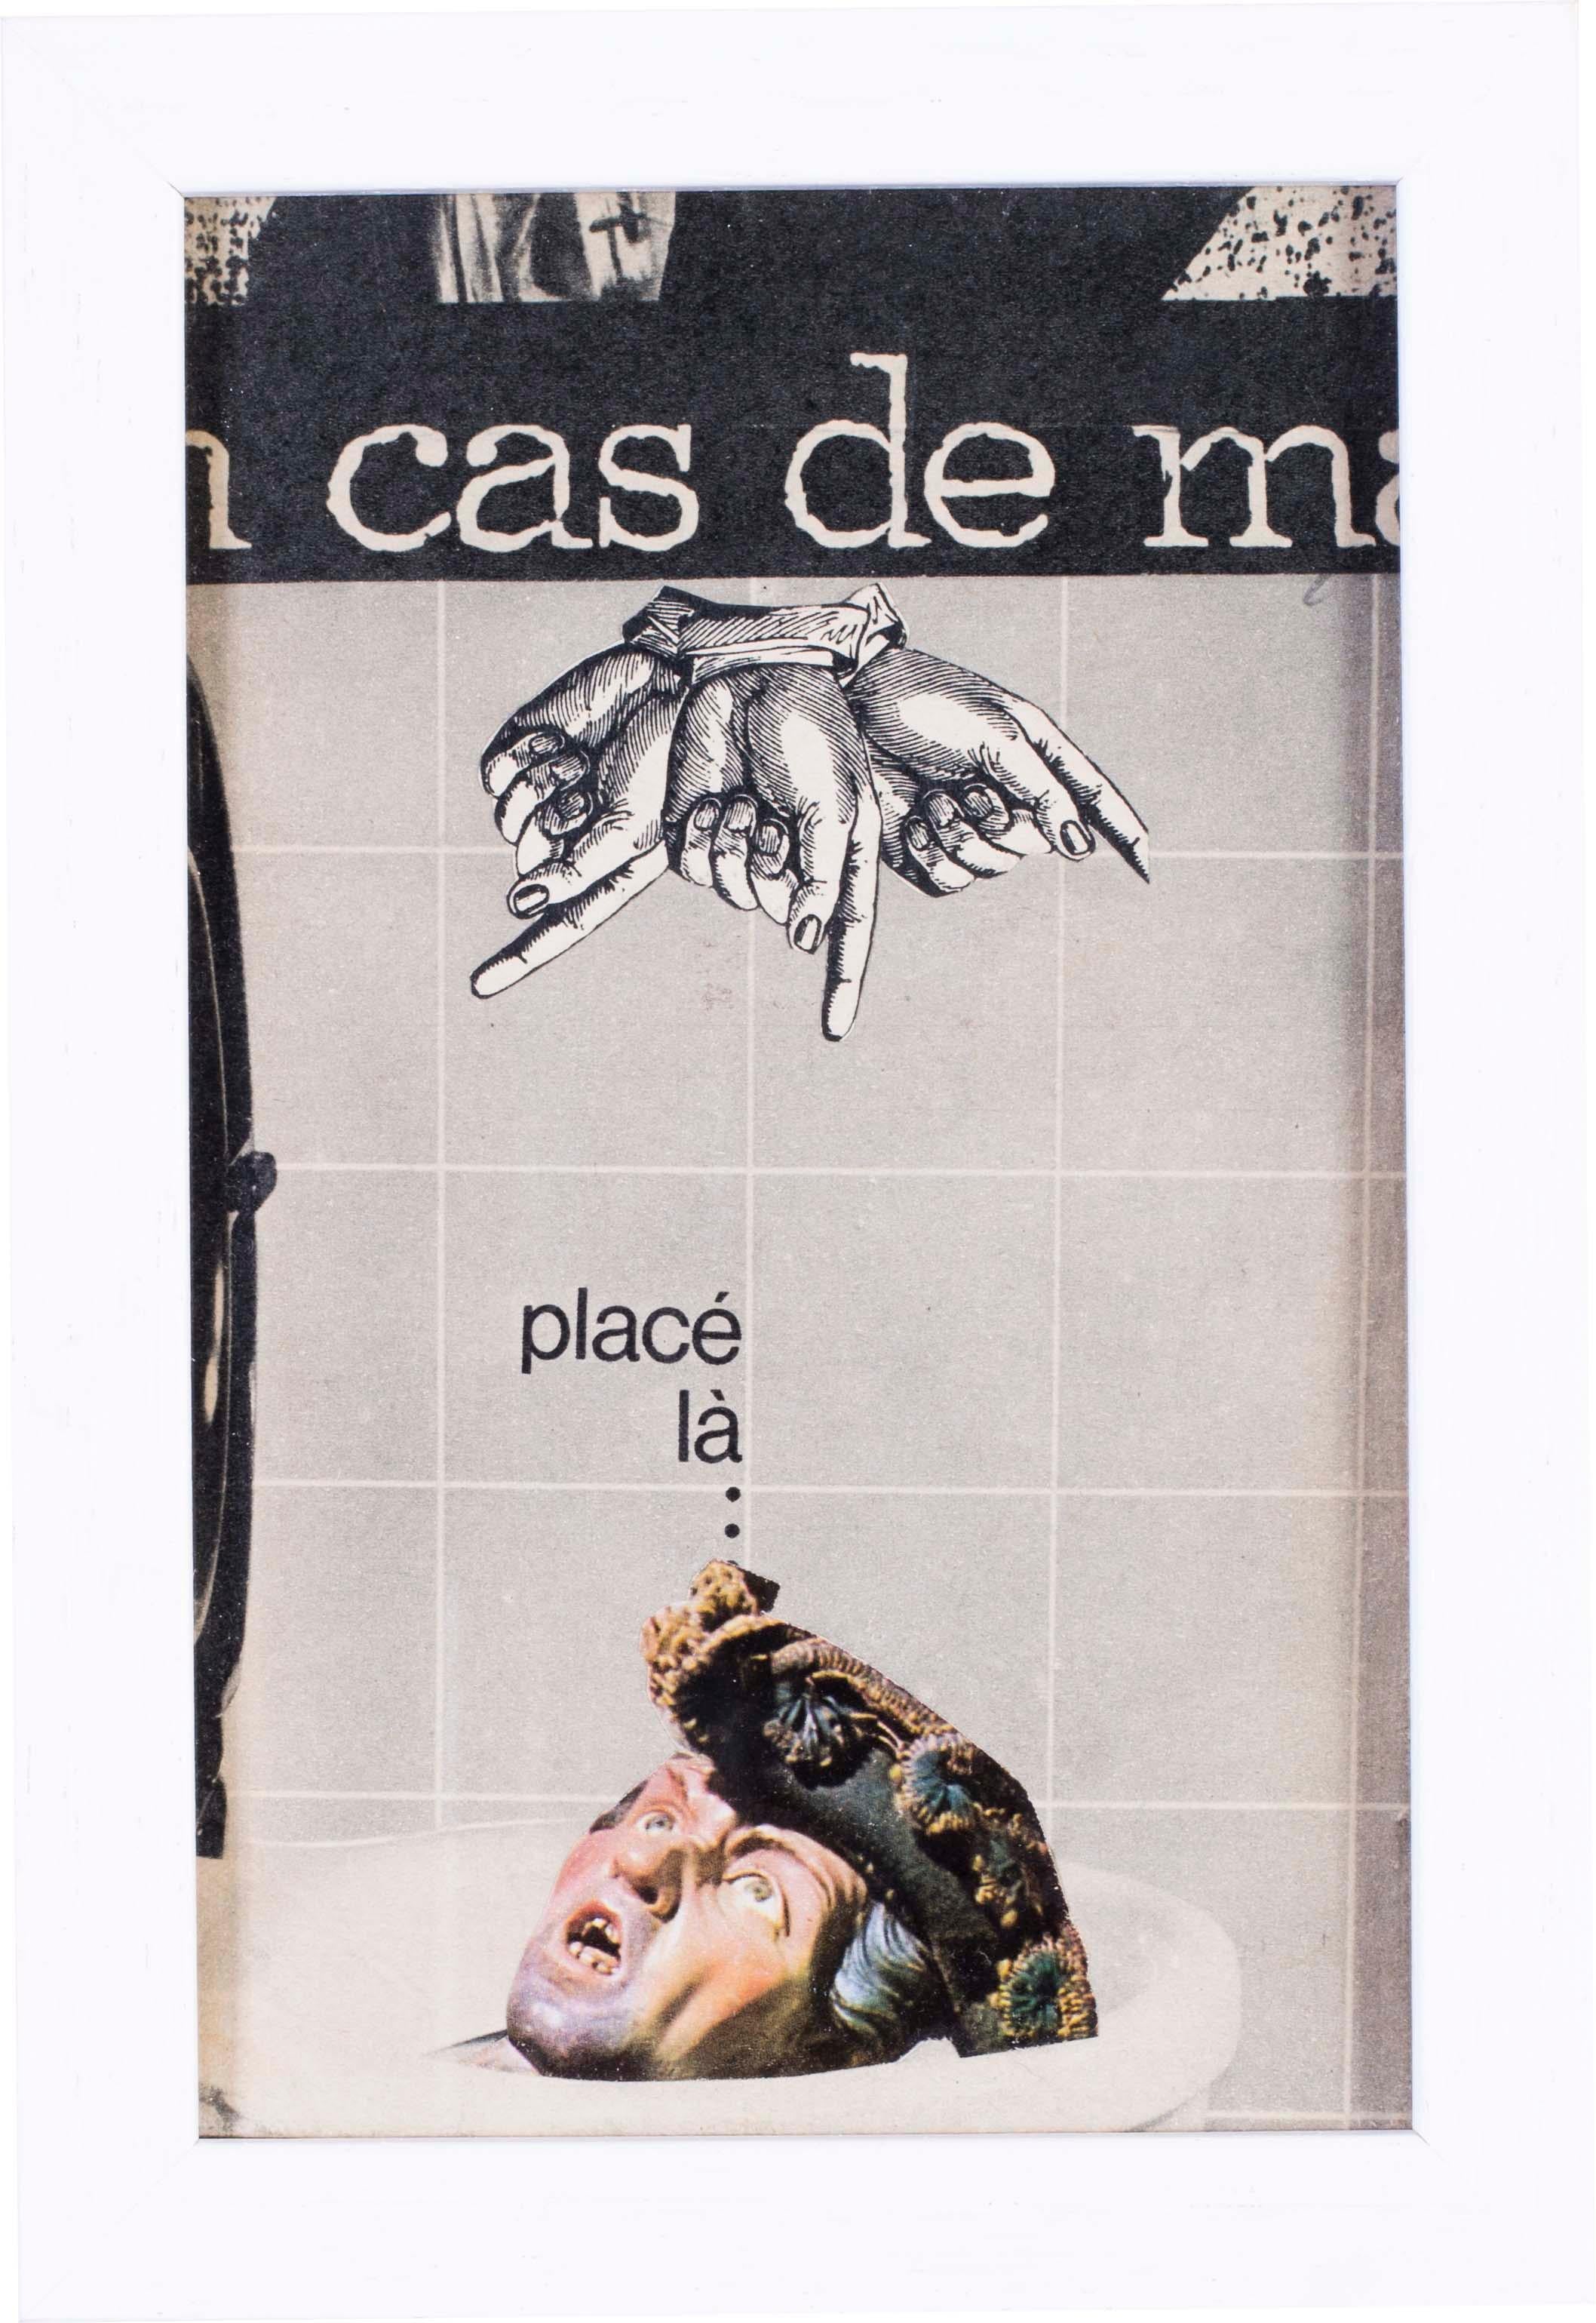 French 1960s Pop Art Collage 'En cas de Malheur’ In case of misfortune, 1966' - Mixed Media Art by Pierre Jourda